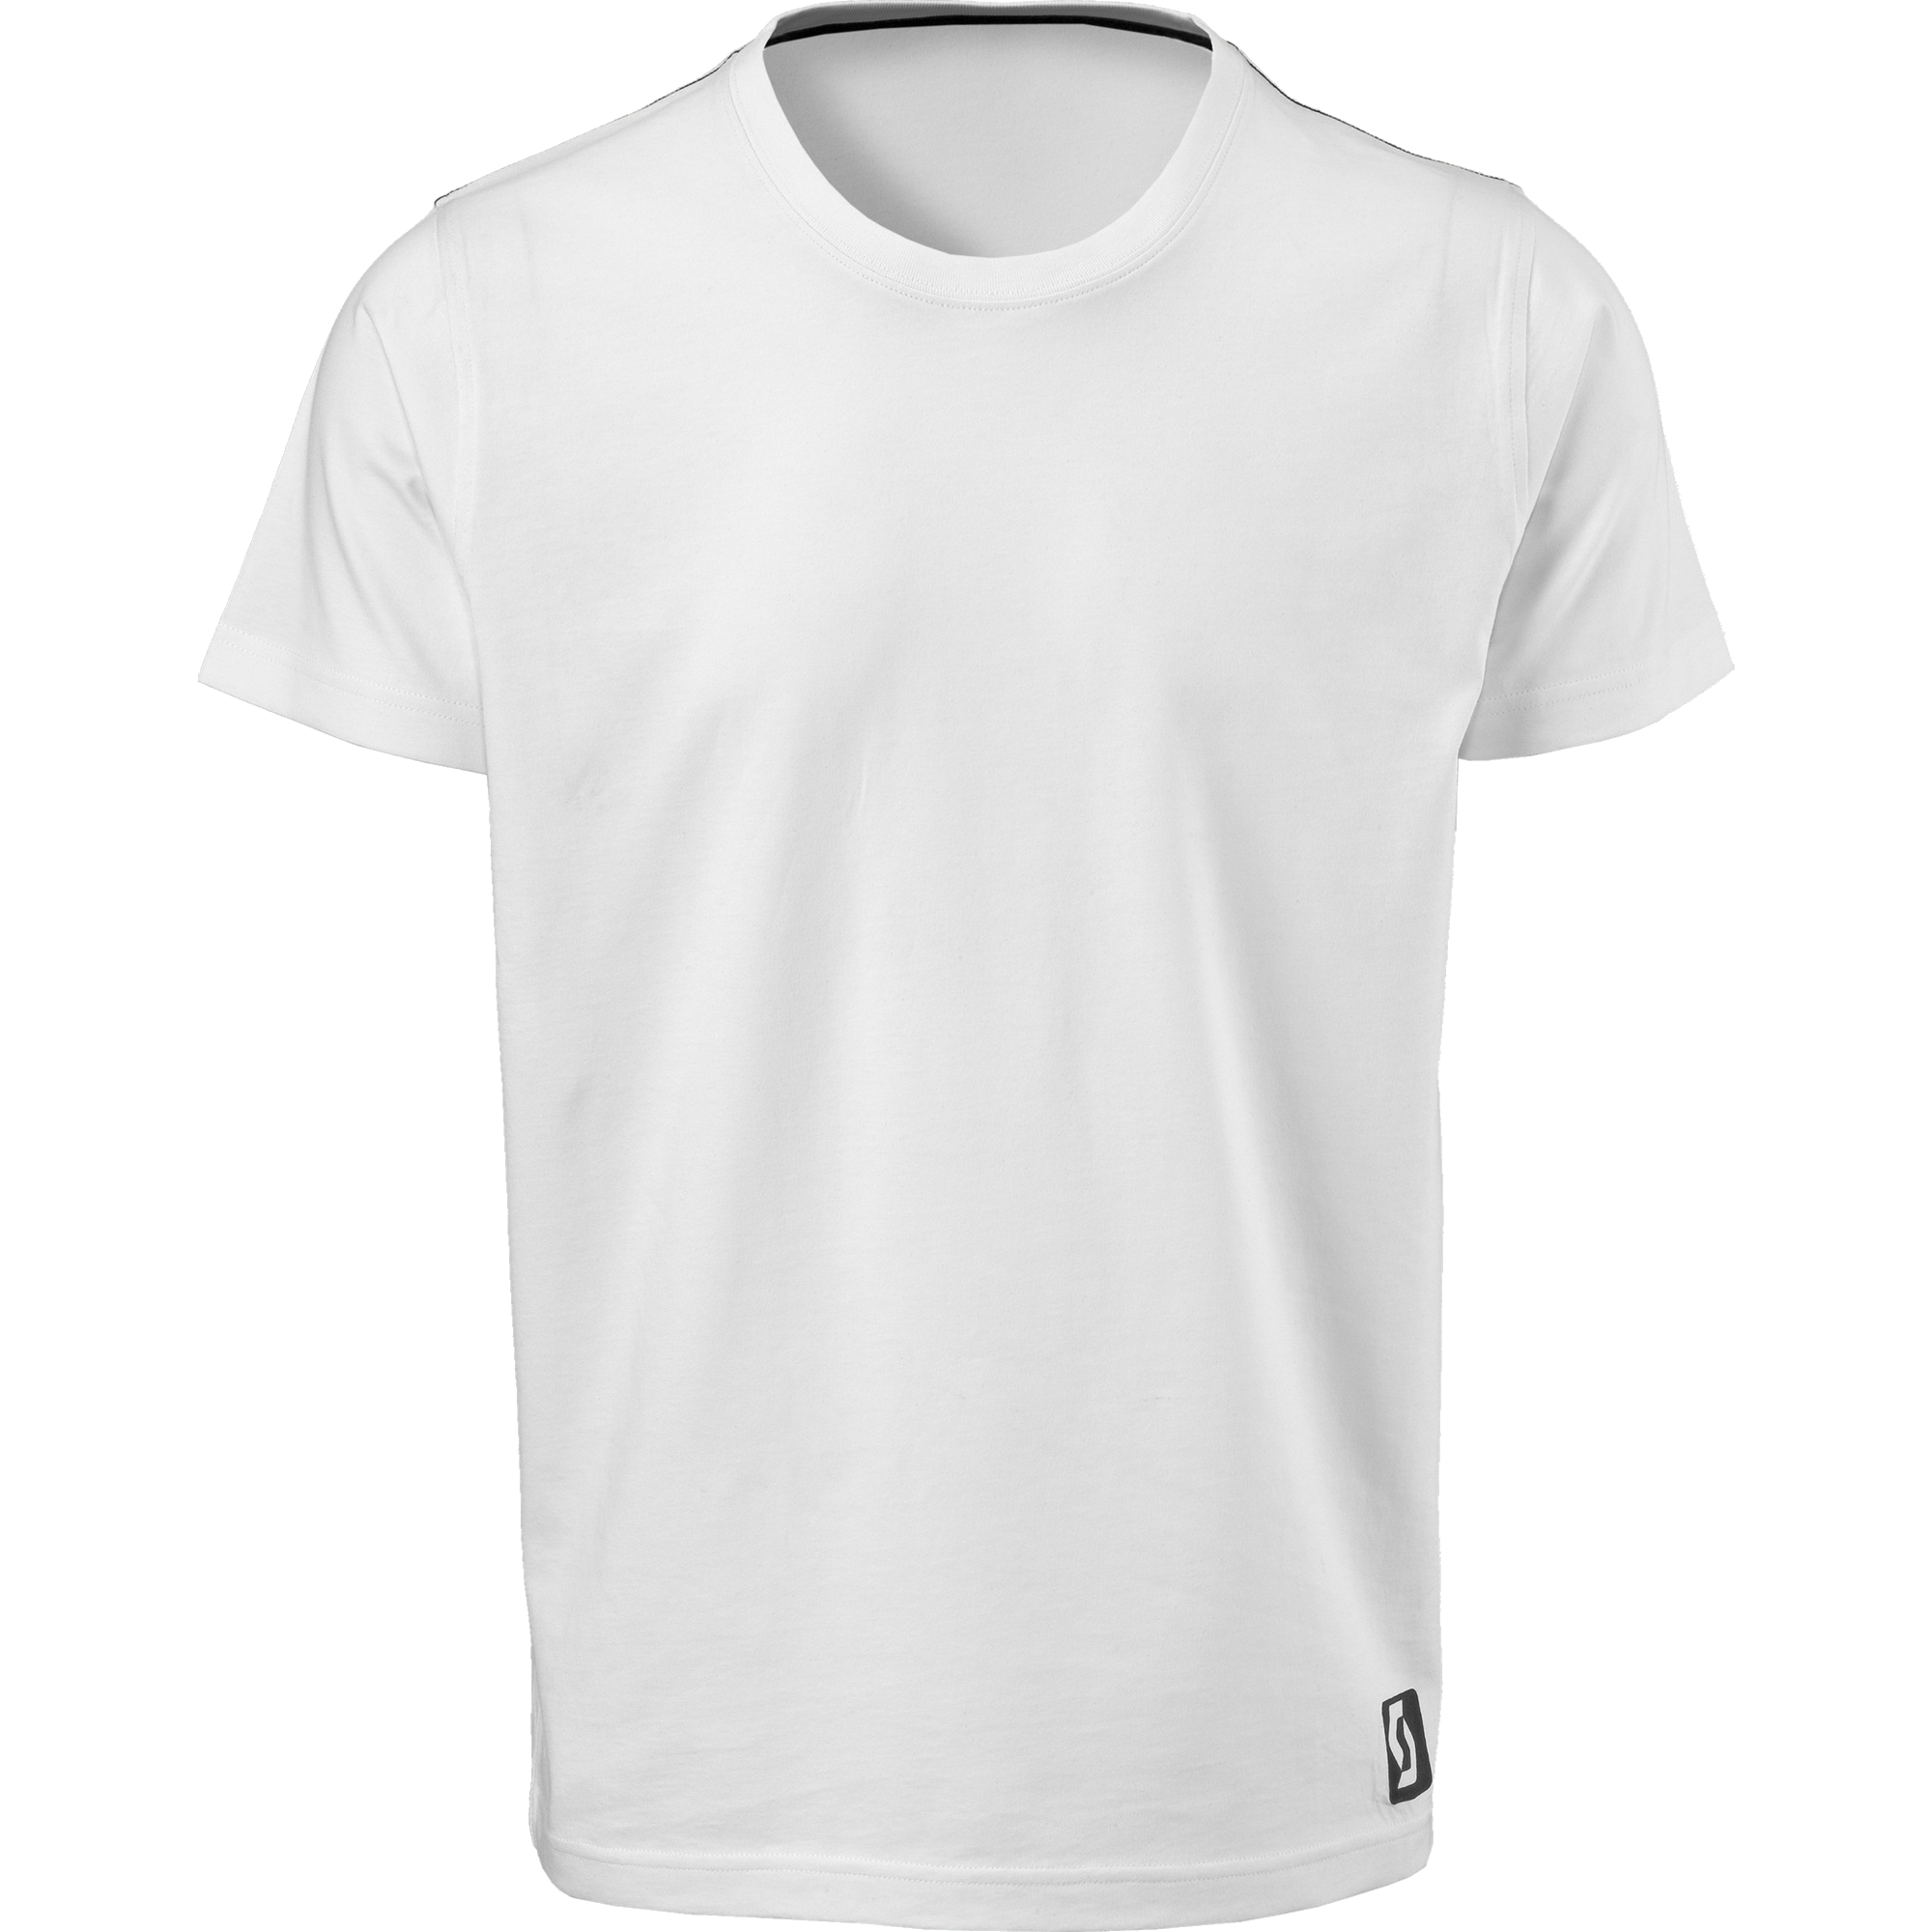 Camiseta blanca PNG imagen de alta calidad | PNG Arts